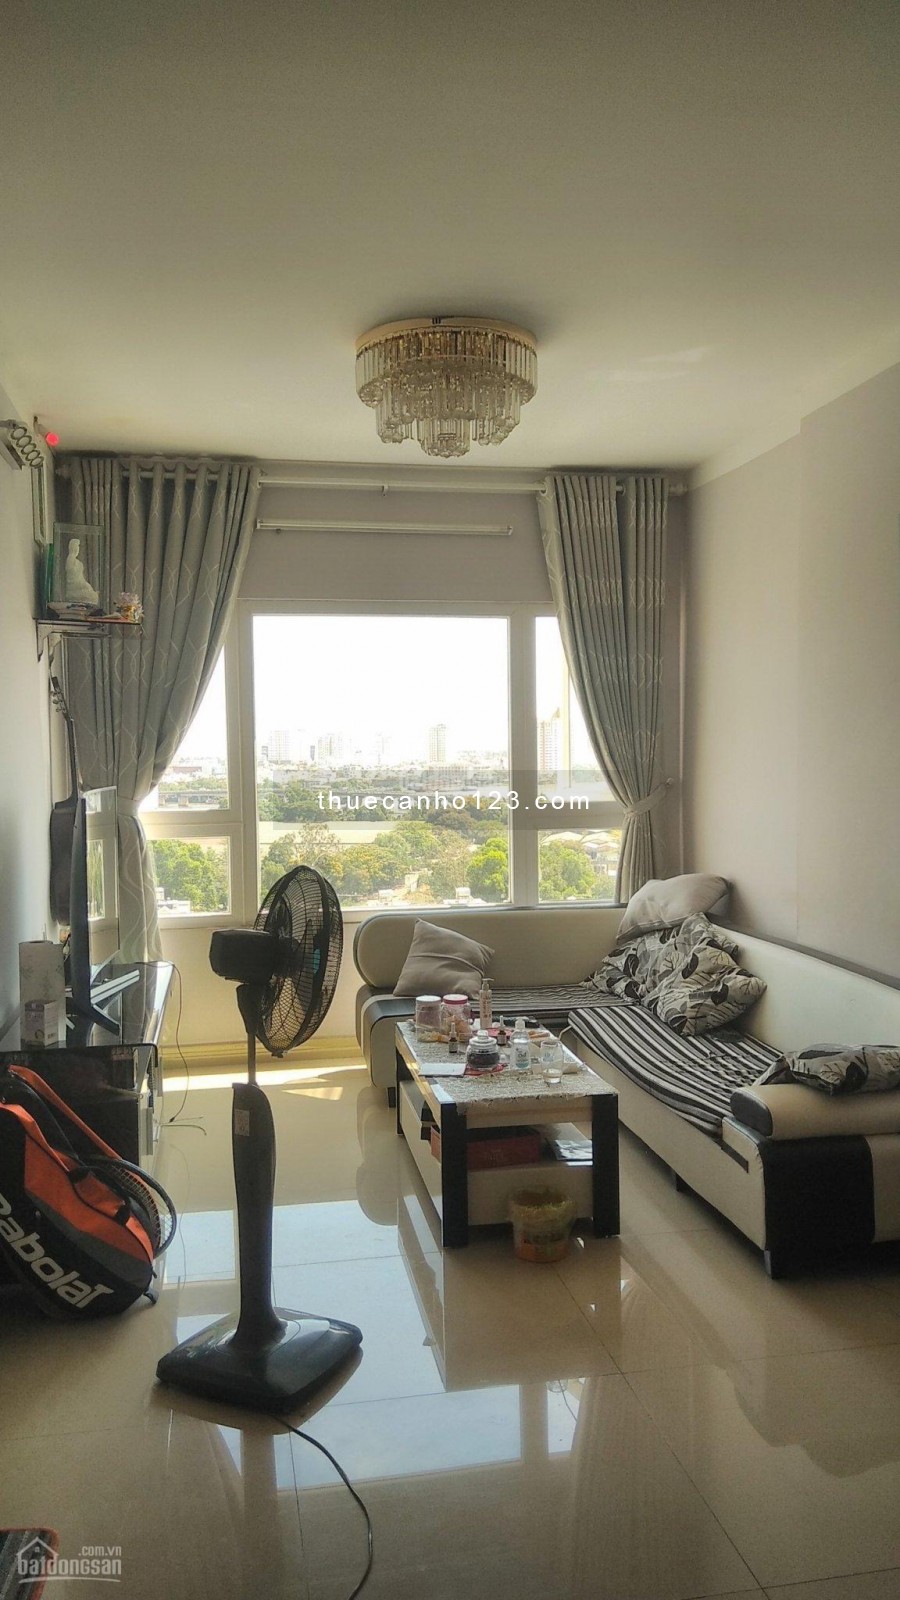 Cho thuê nhanh căn hộ chung cư Saigonres Plaza 72m2 thiết kế gồm 2 phòng ngủ, 2 phòng vệ sinh